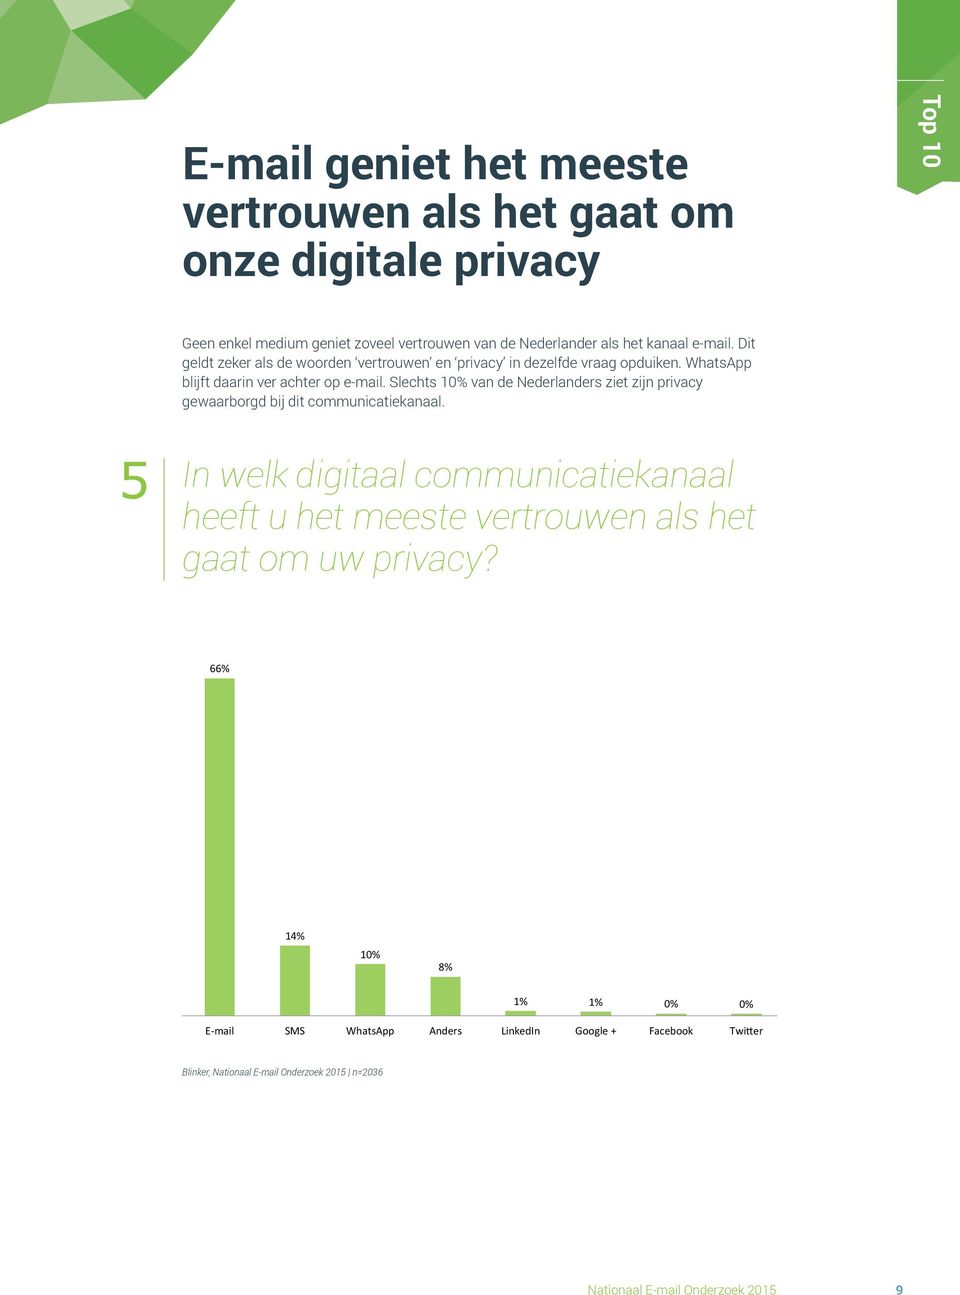 WhatsApp blijft daarin ver achter op e-mail. Slechts 10% van de Nederlanders ziet zijn privacy gewaarborgd bij dit communicatiekanaal.